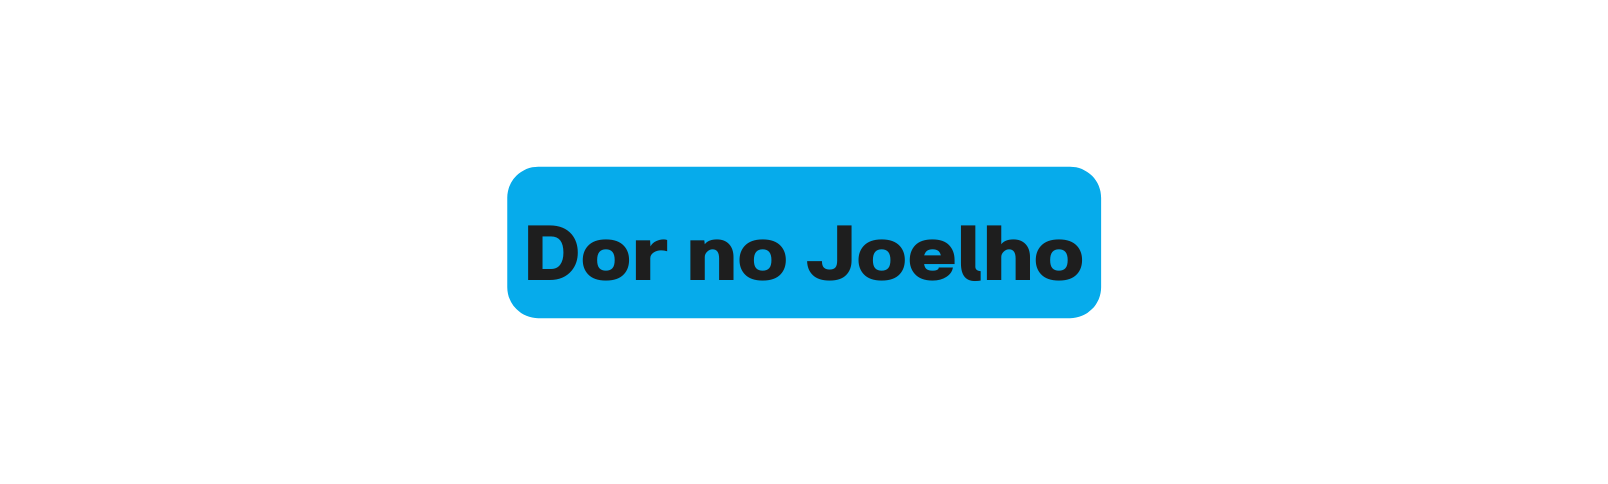 Dor no Joelho